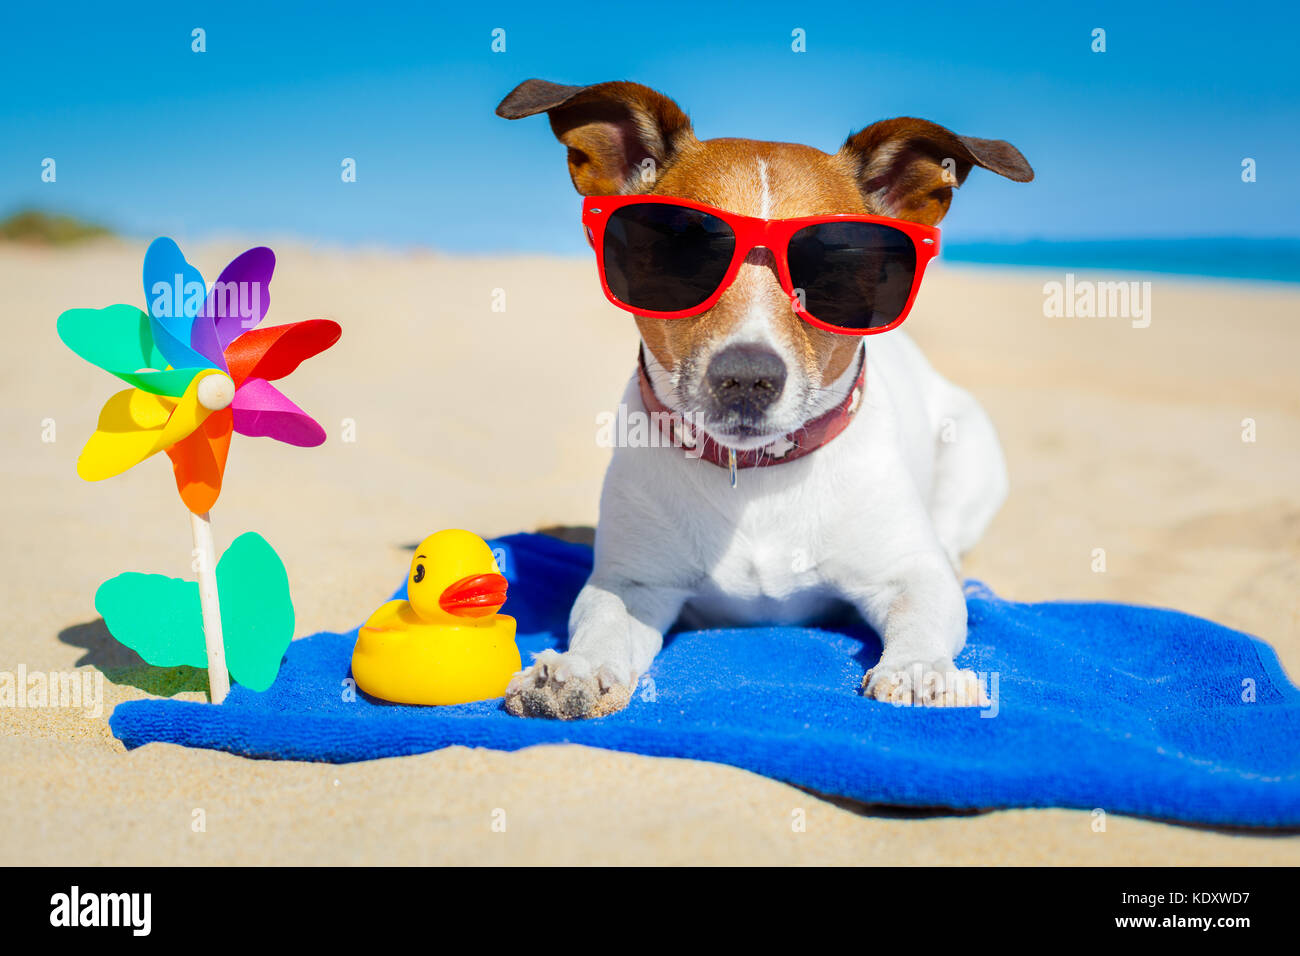 Hund spielt mit Sonnenbrille am Strand Sommer Urlaub Ferien Stockfotografie  - Alamy